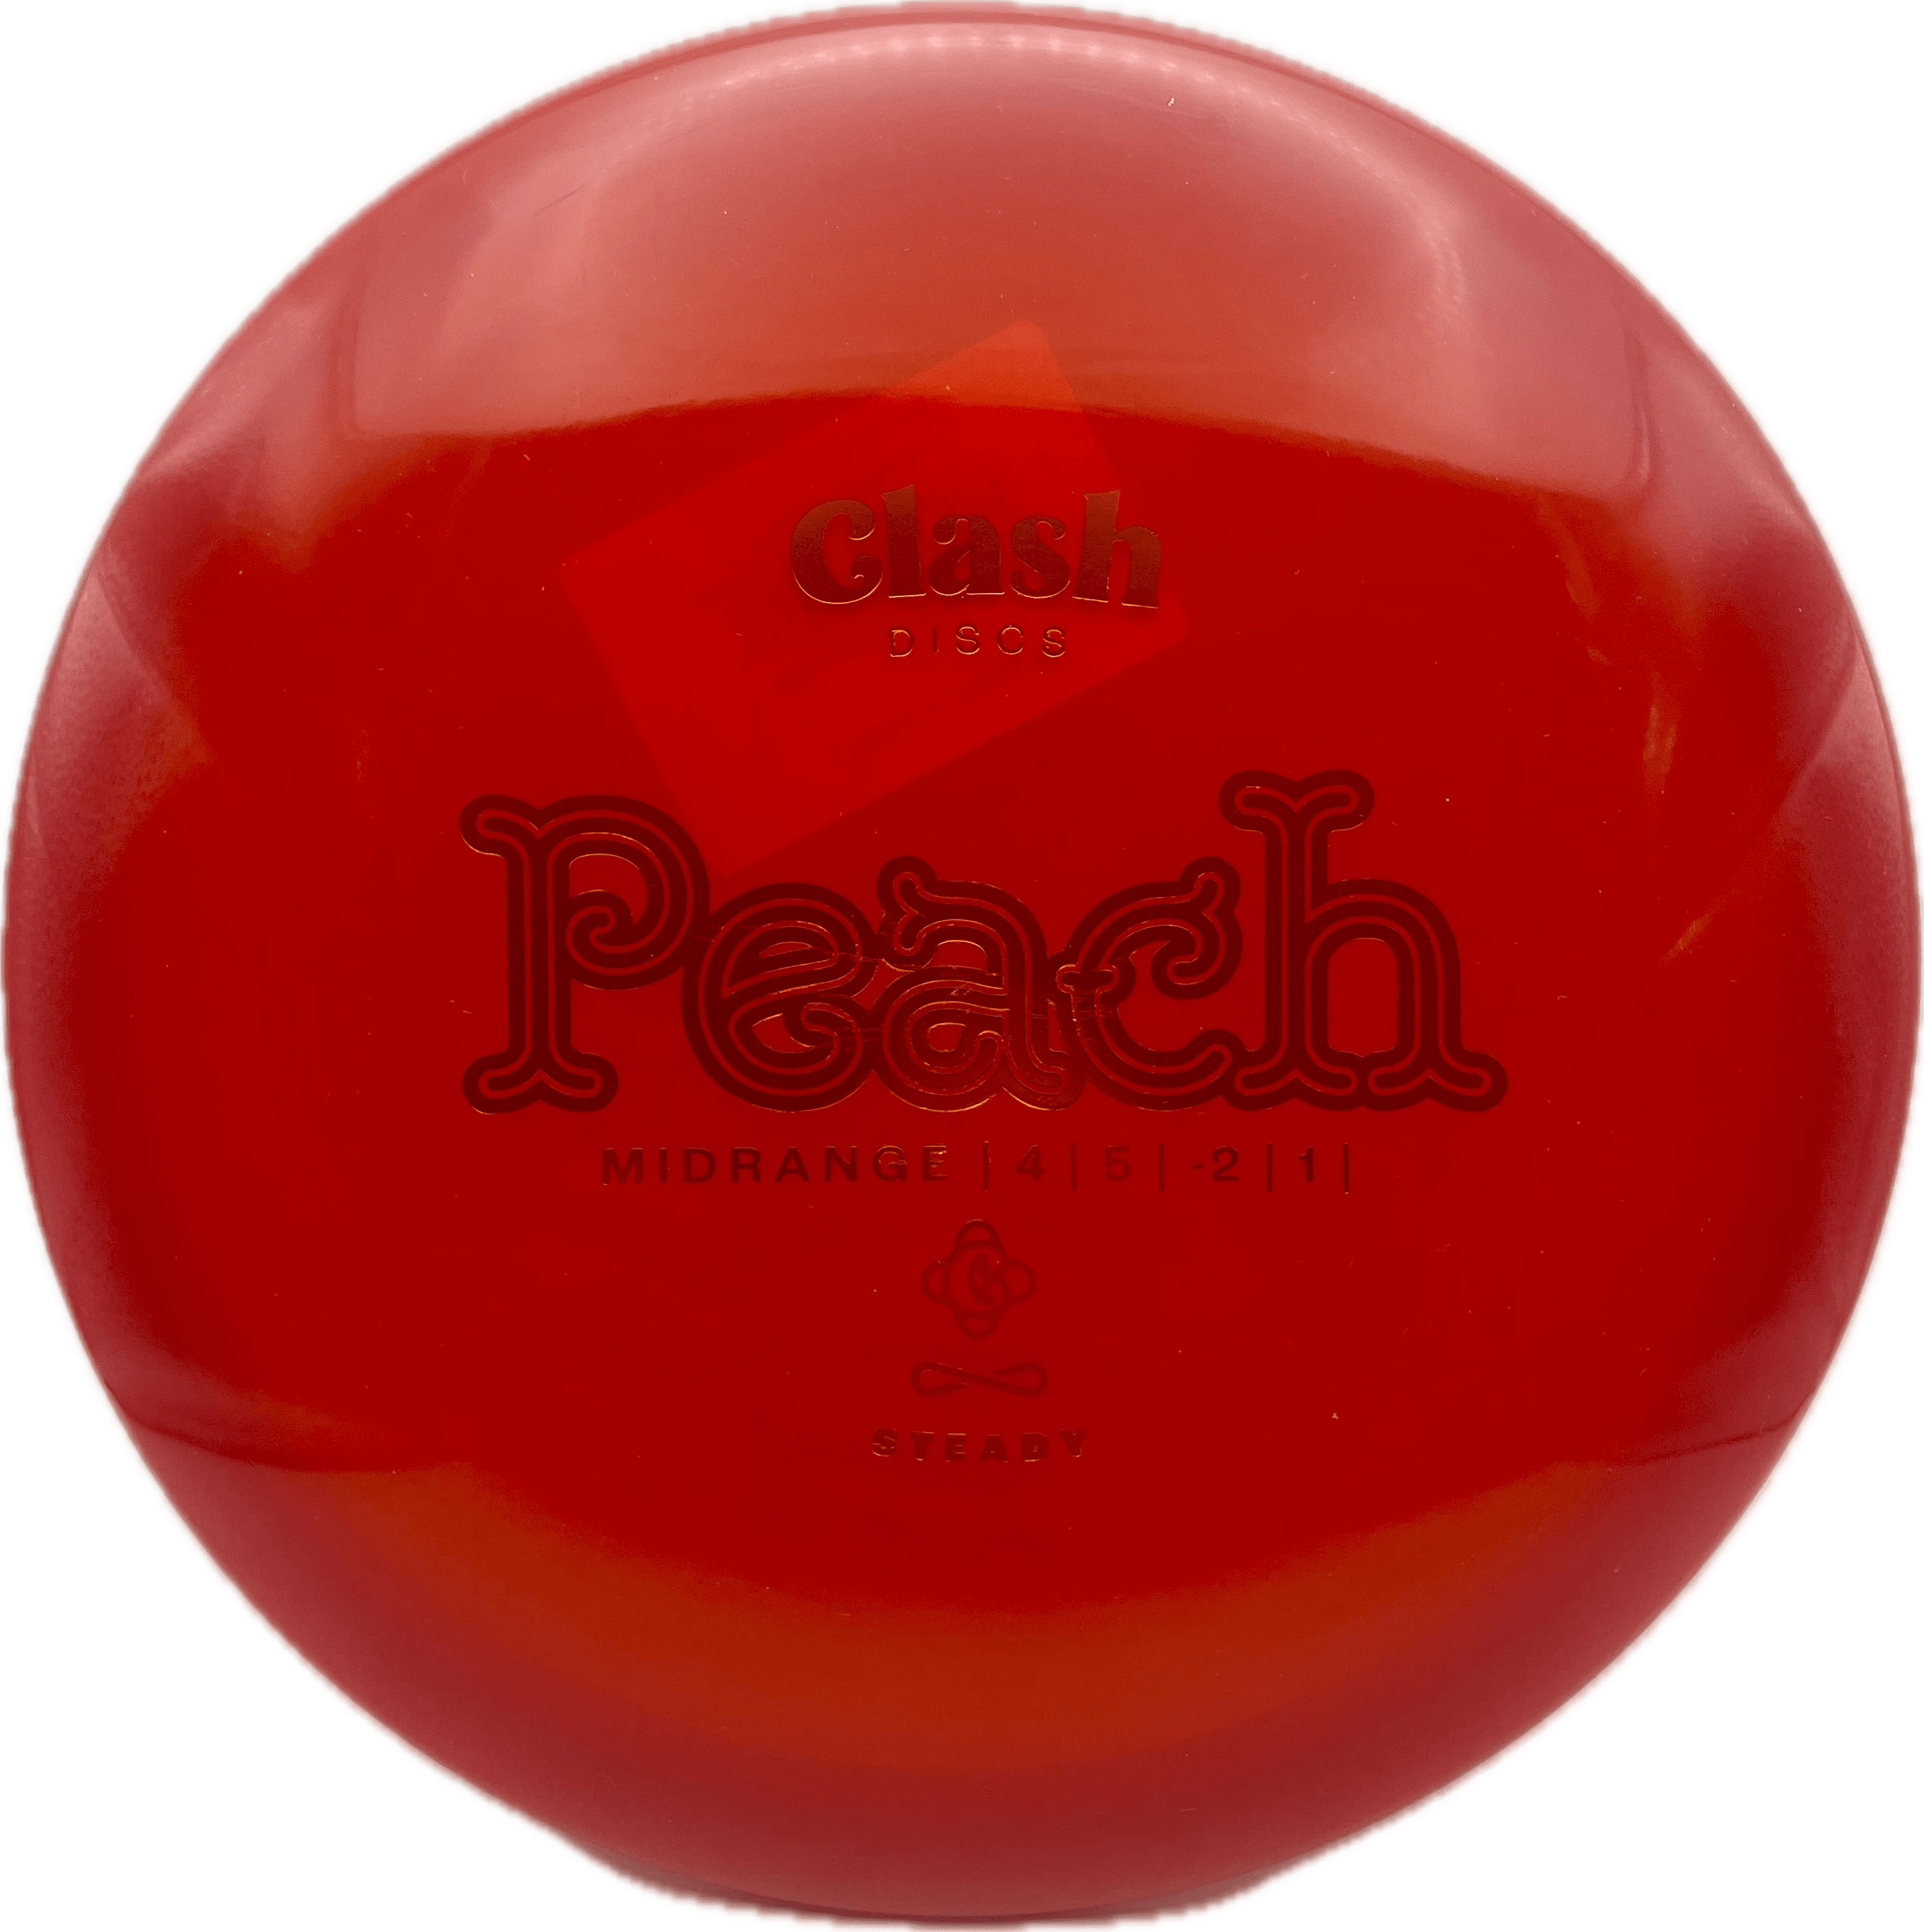 Clash Disc Clash Peach, Steady, 175-176, Red, Gold Metallic